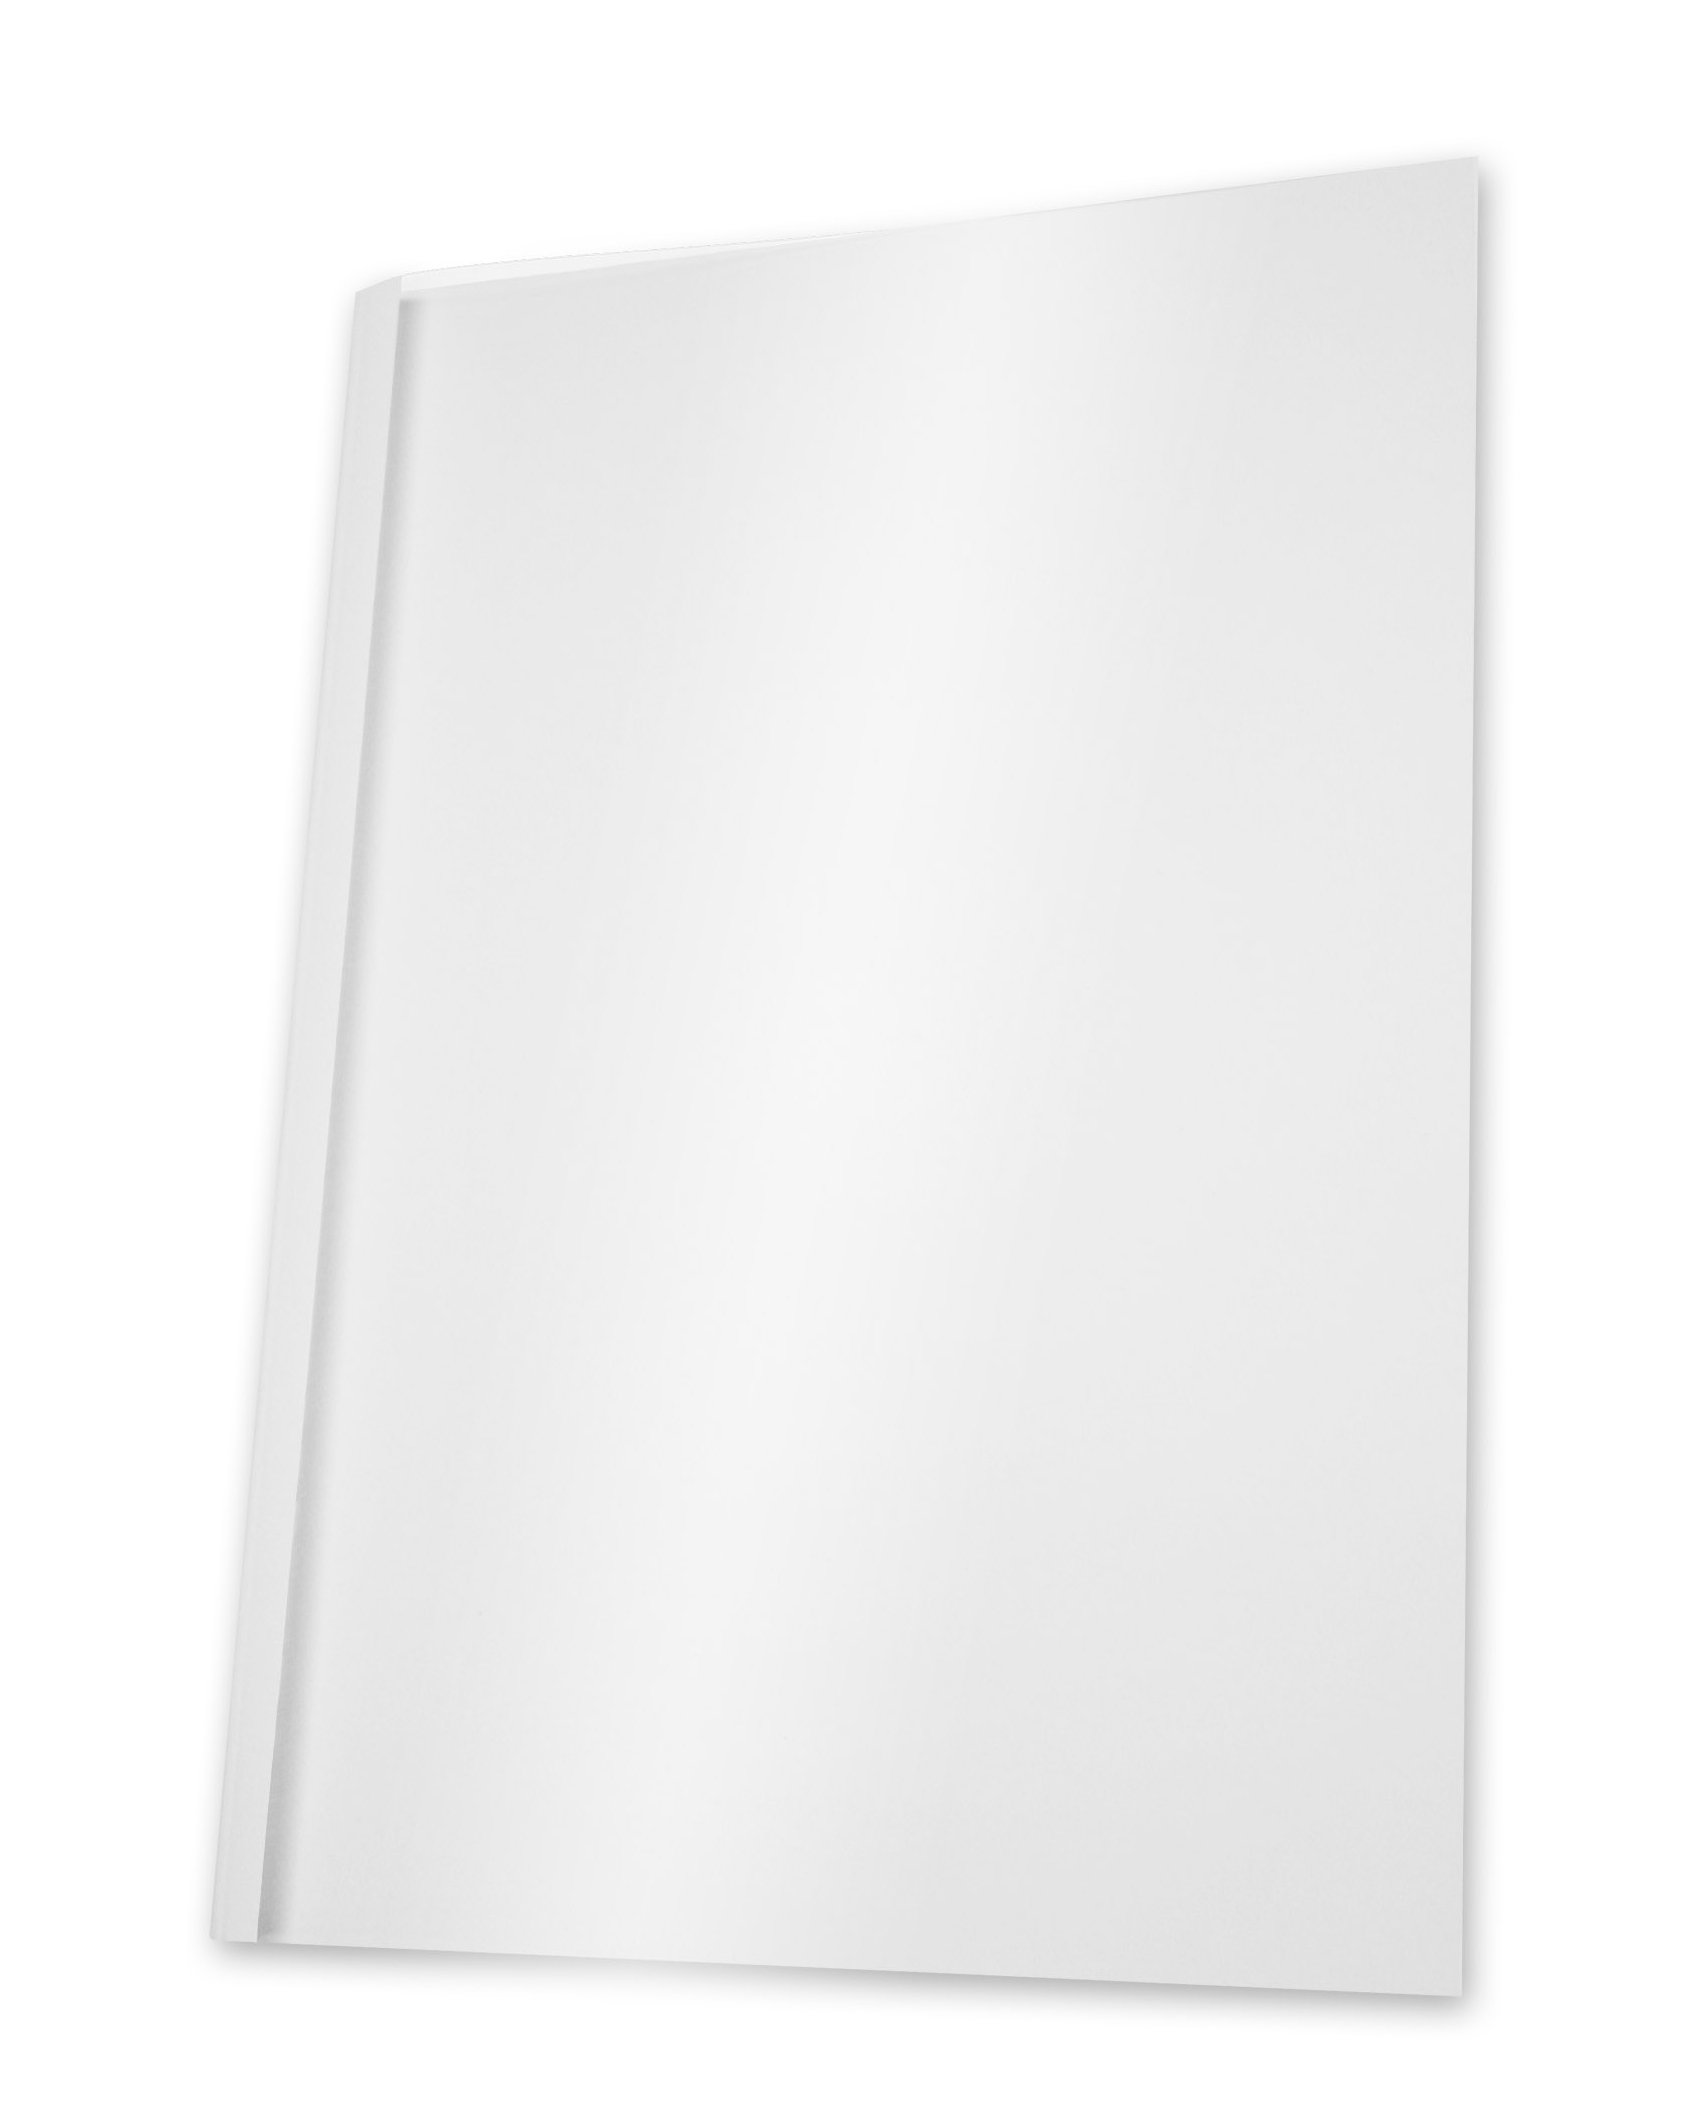 Pavo Thermo-bindemappen A4, Rückenbreite 8 mm, 100-er Pack, 61-80 Blatt, weiß/transparent